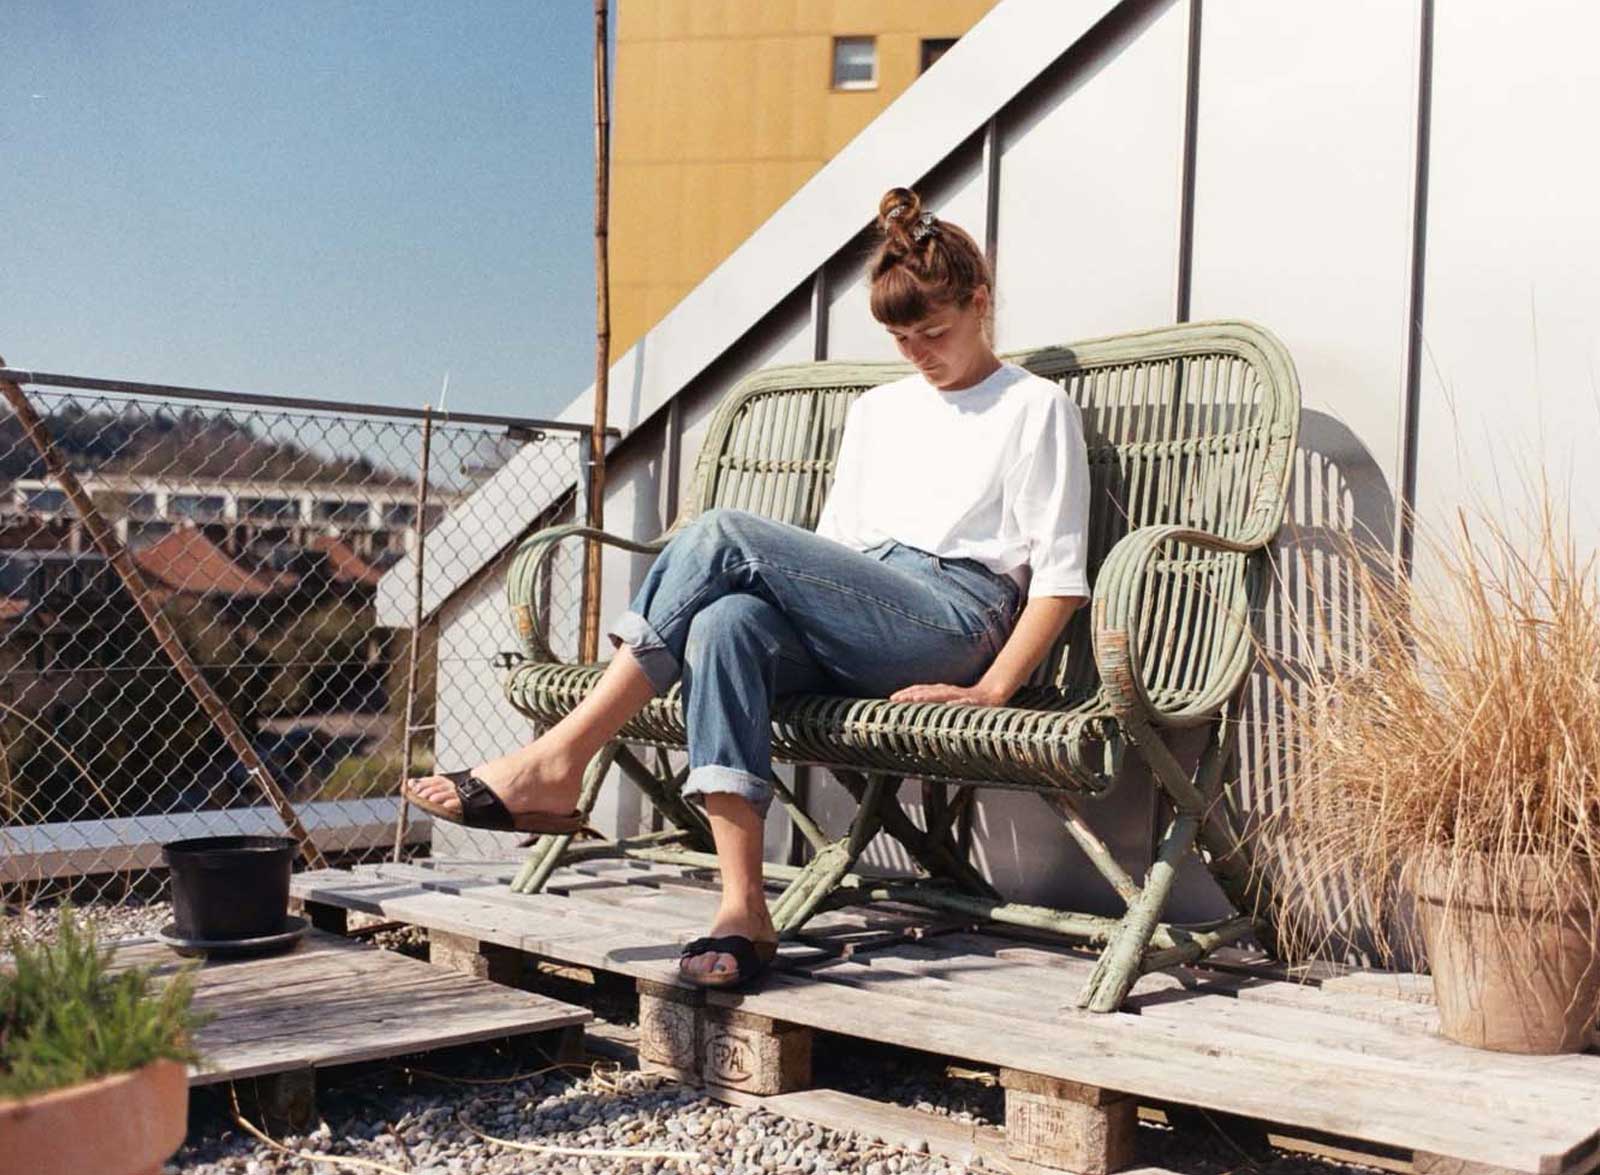 Weibliche Person mit weissem Shirt und Bluejeans sitzt auf einer Sonnenterasse in einer geflechteten Couch.